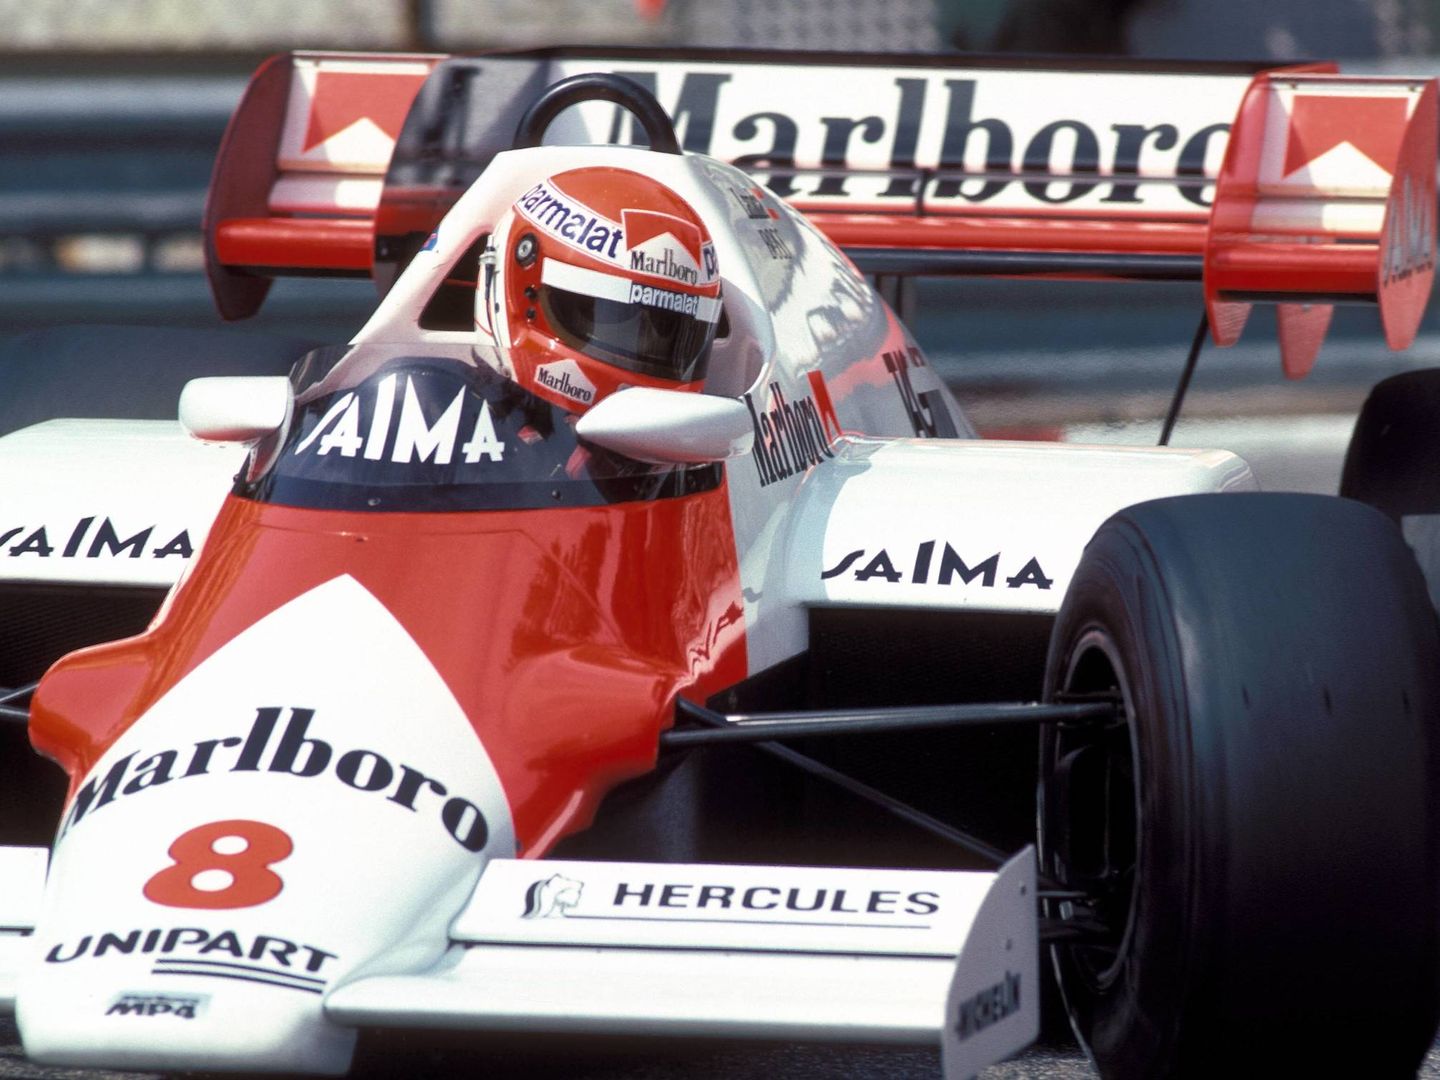 Porsche motorizó a la McLaren histórica de los años 80 que inspiró el kart fabricado por el padre de Fernando Alonso.